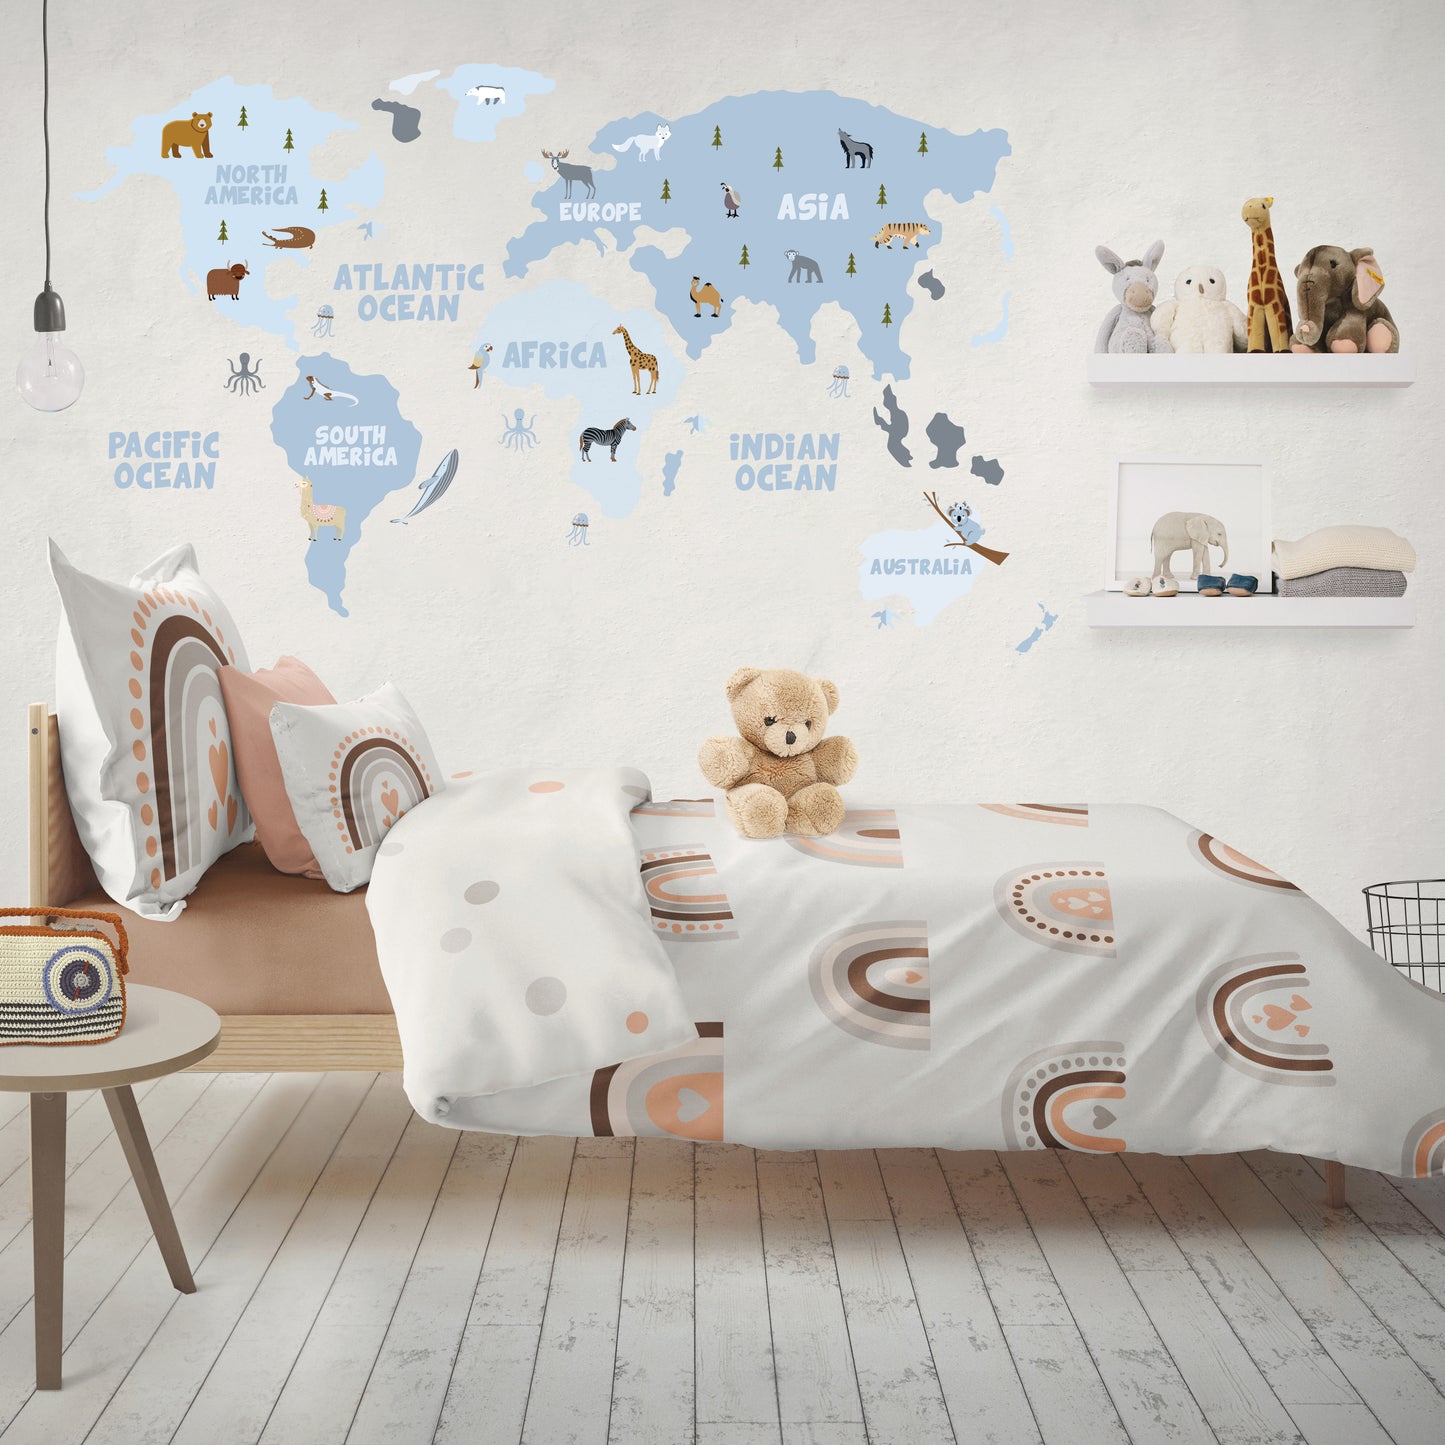 إيلي جونيور -خريطة عالم ضخمة فاتنة، متاحة في 3 ألوان